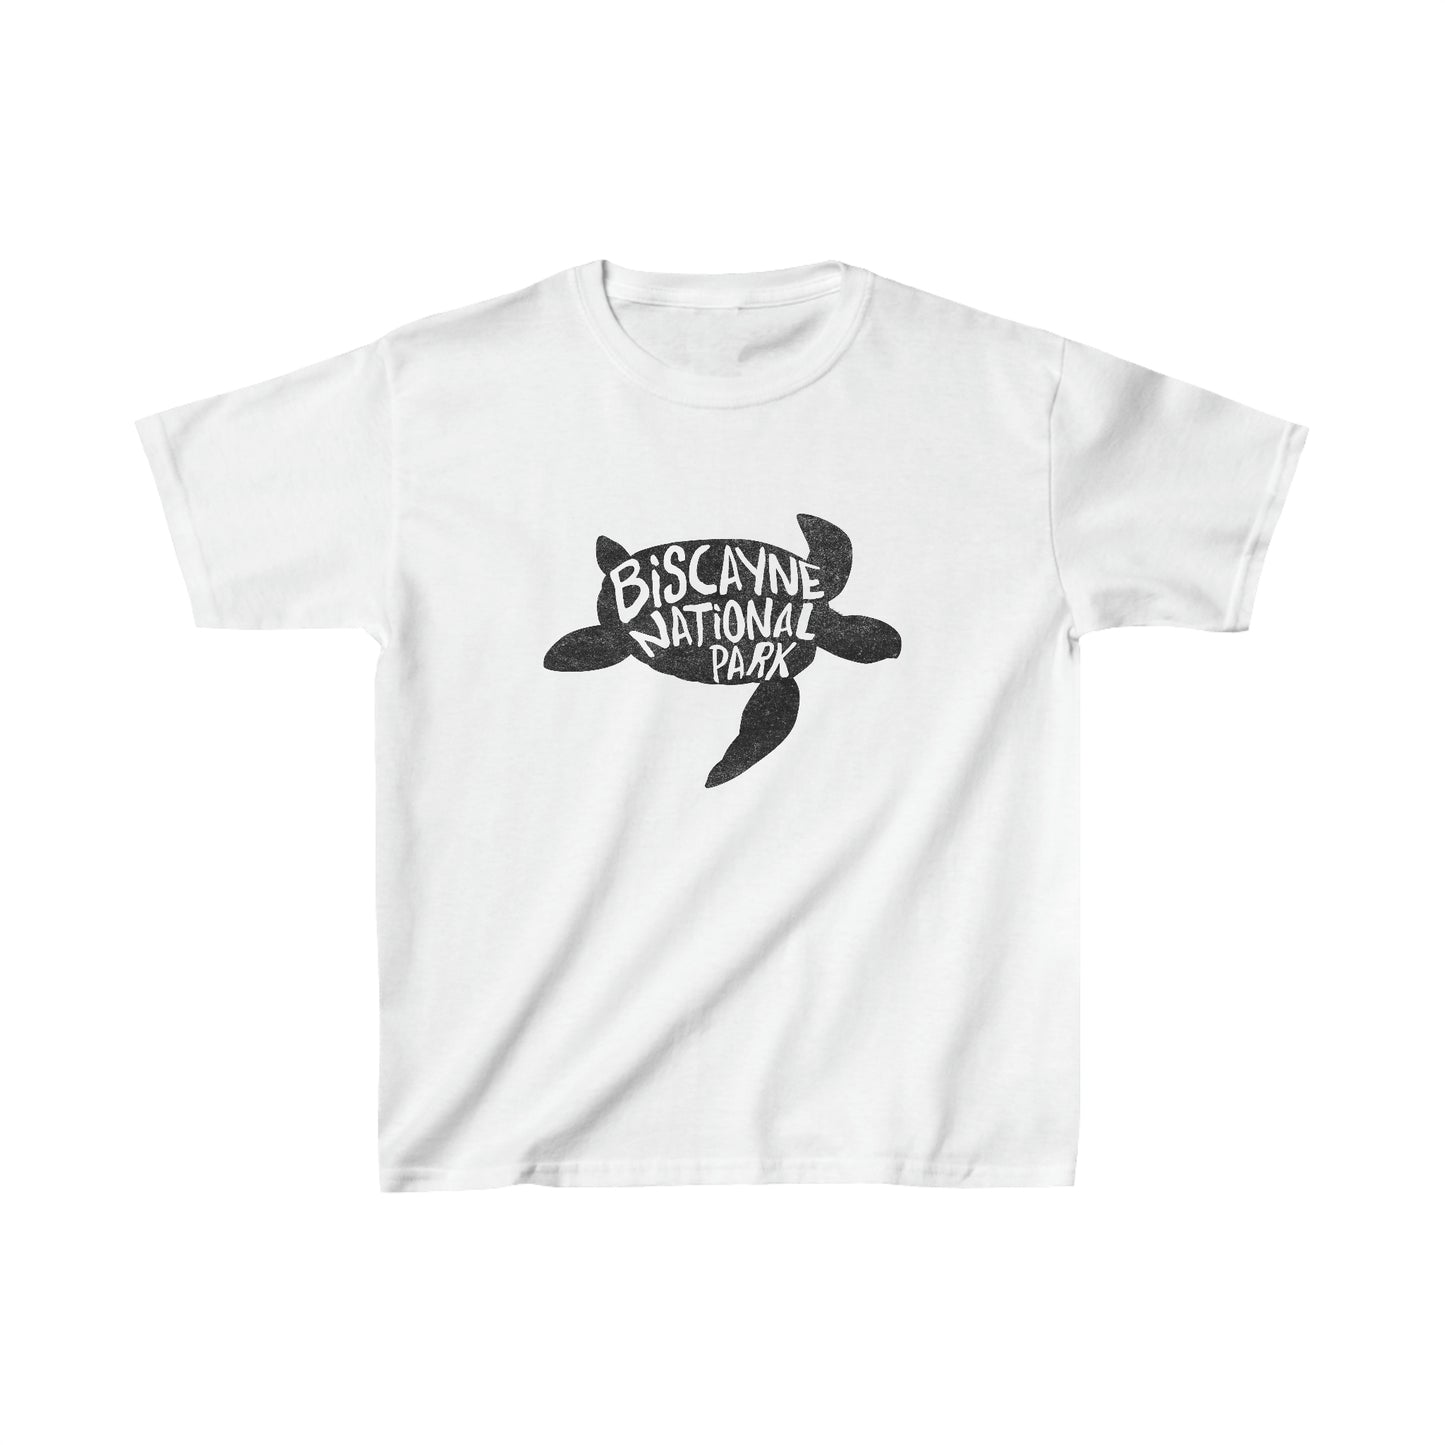 Biscayne National Park Child T-Shirt - Turtle Design